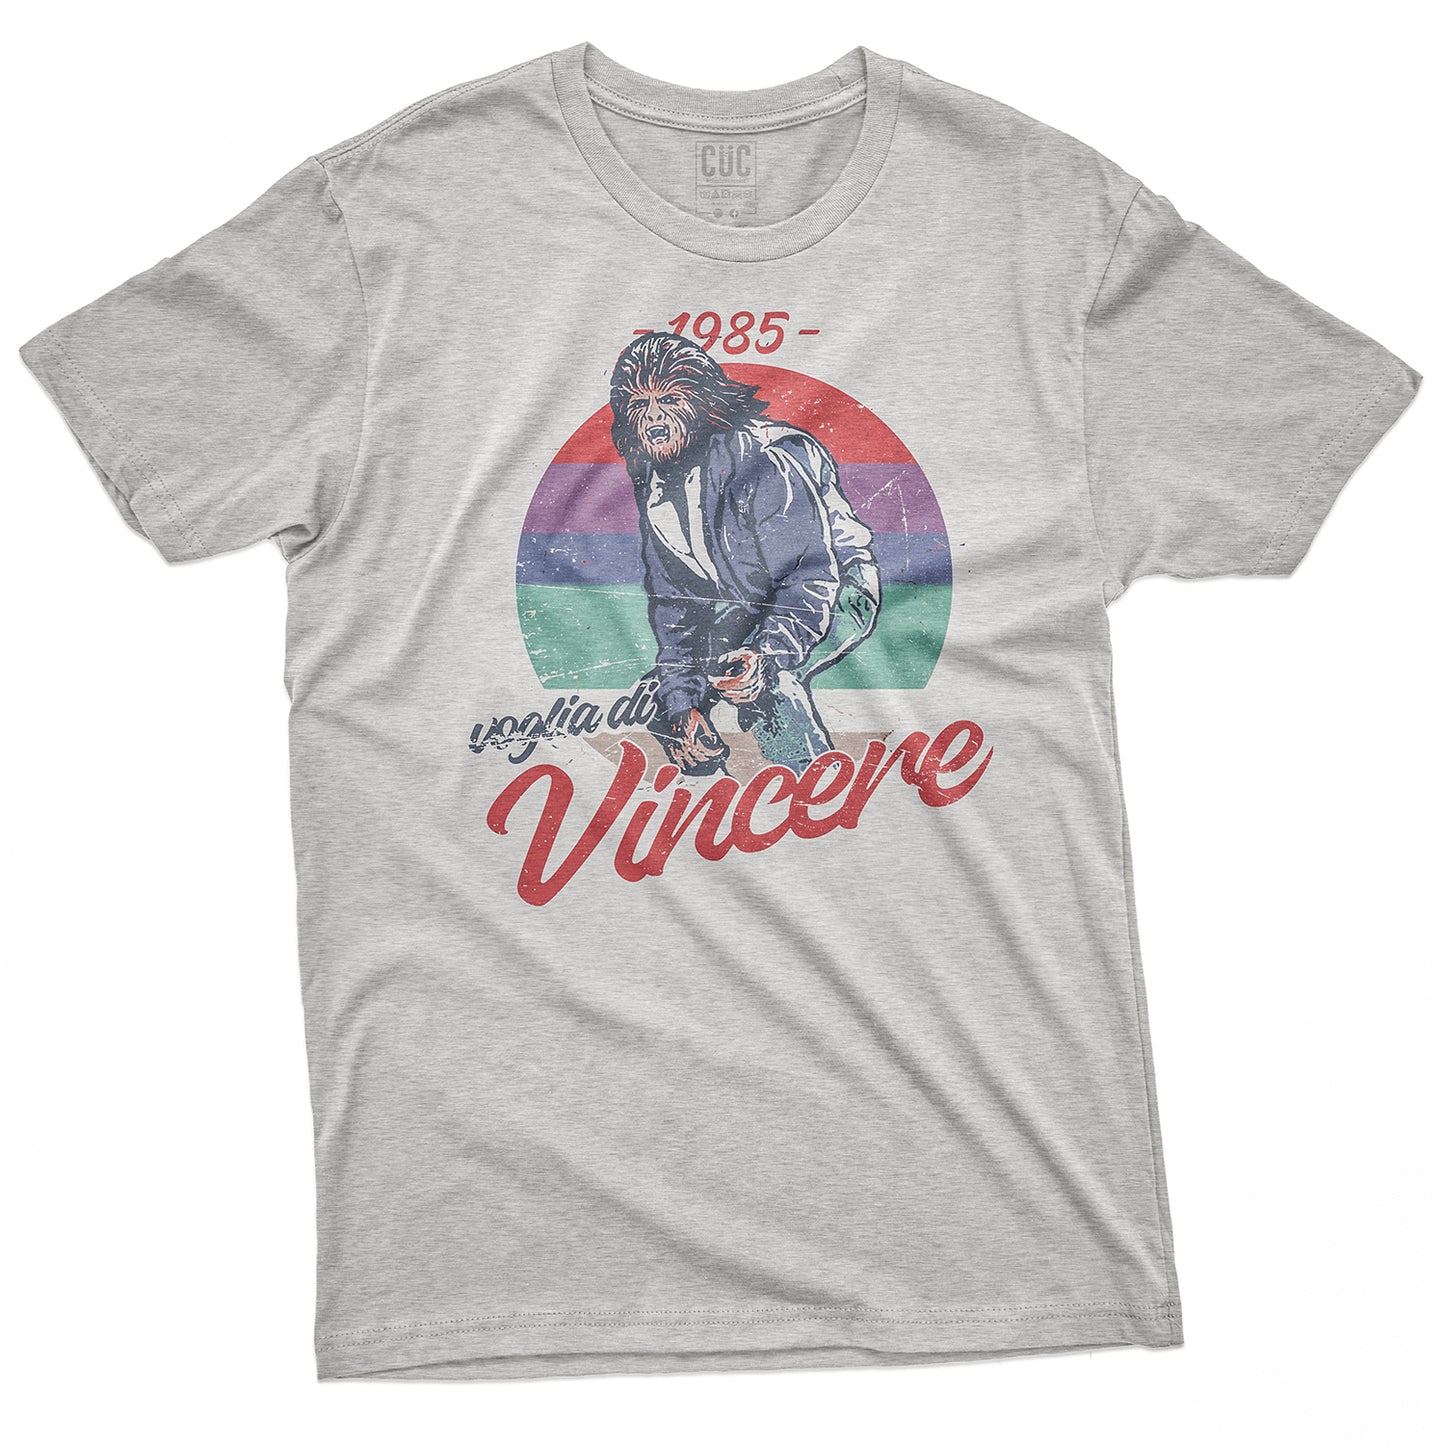 CUC T-Shirt  VOGLIA DI VINCERE 85 - Michael J Fox - Cult Movies  #chooseurcolor